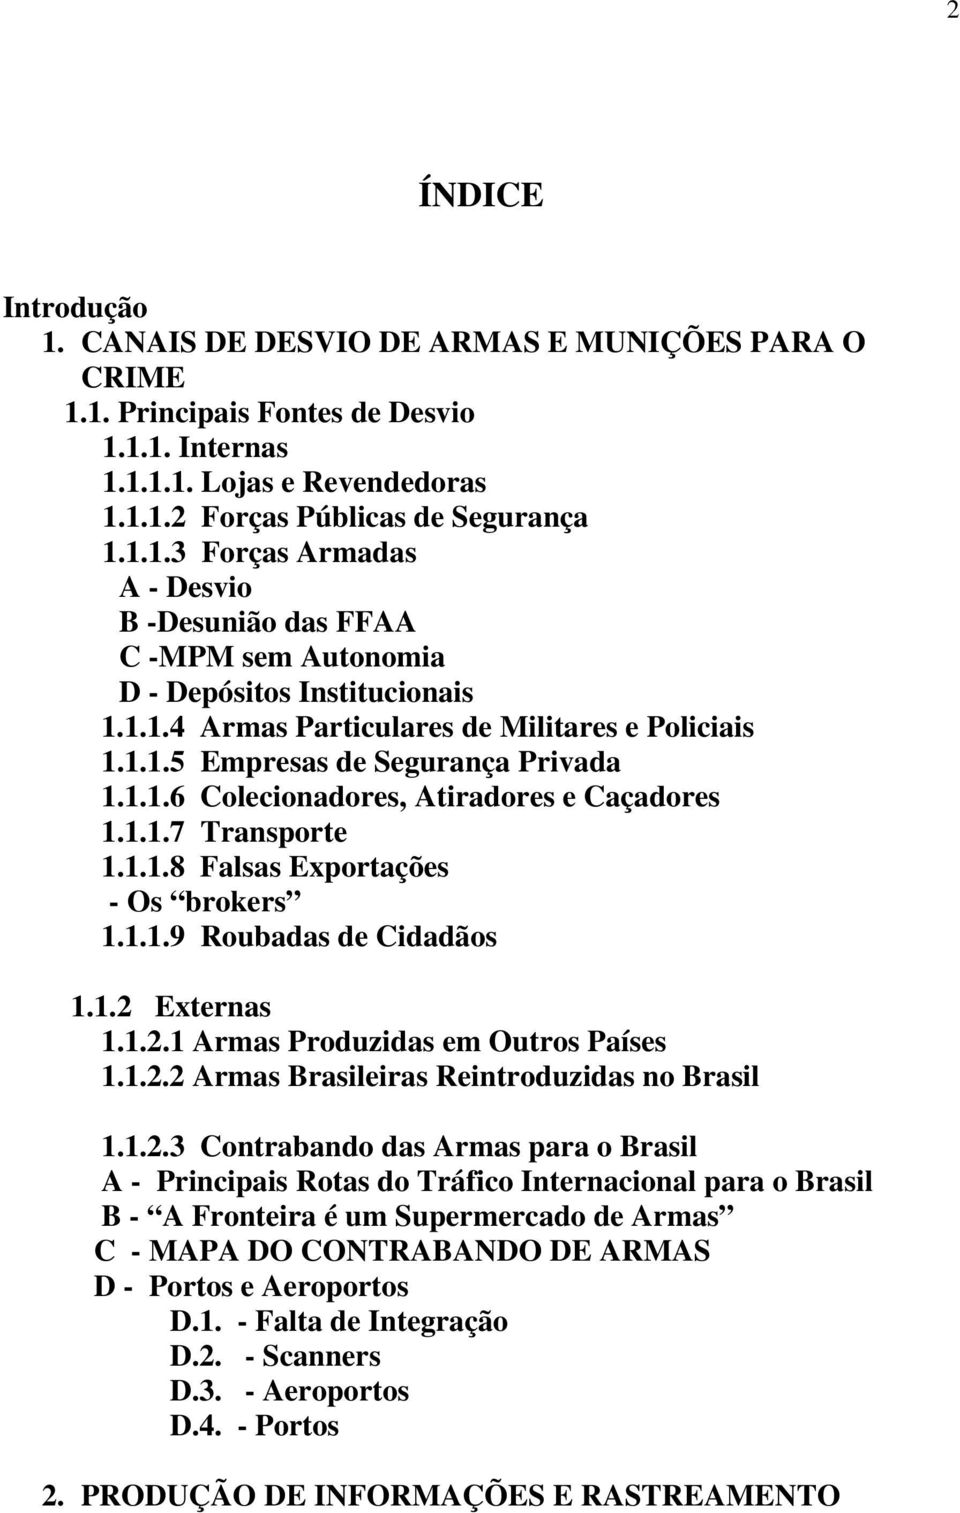 1.2 Externas 1.1.2.1 Armas Produzidas em Outros Países 1.1.2.2 Armas Brasileiras Reintroduzidas no Brasil 1.1.2.3 Contrabando das Armas para o Brasil A - Principais Rotas do Tráfico Internacional